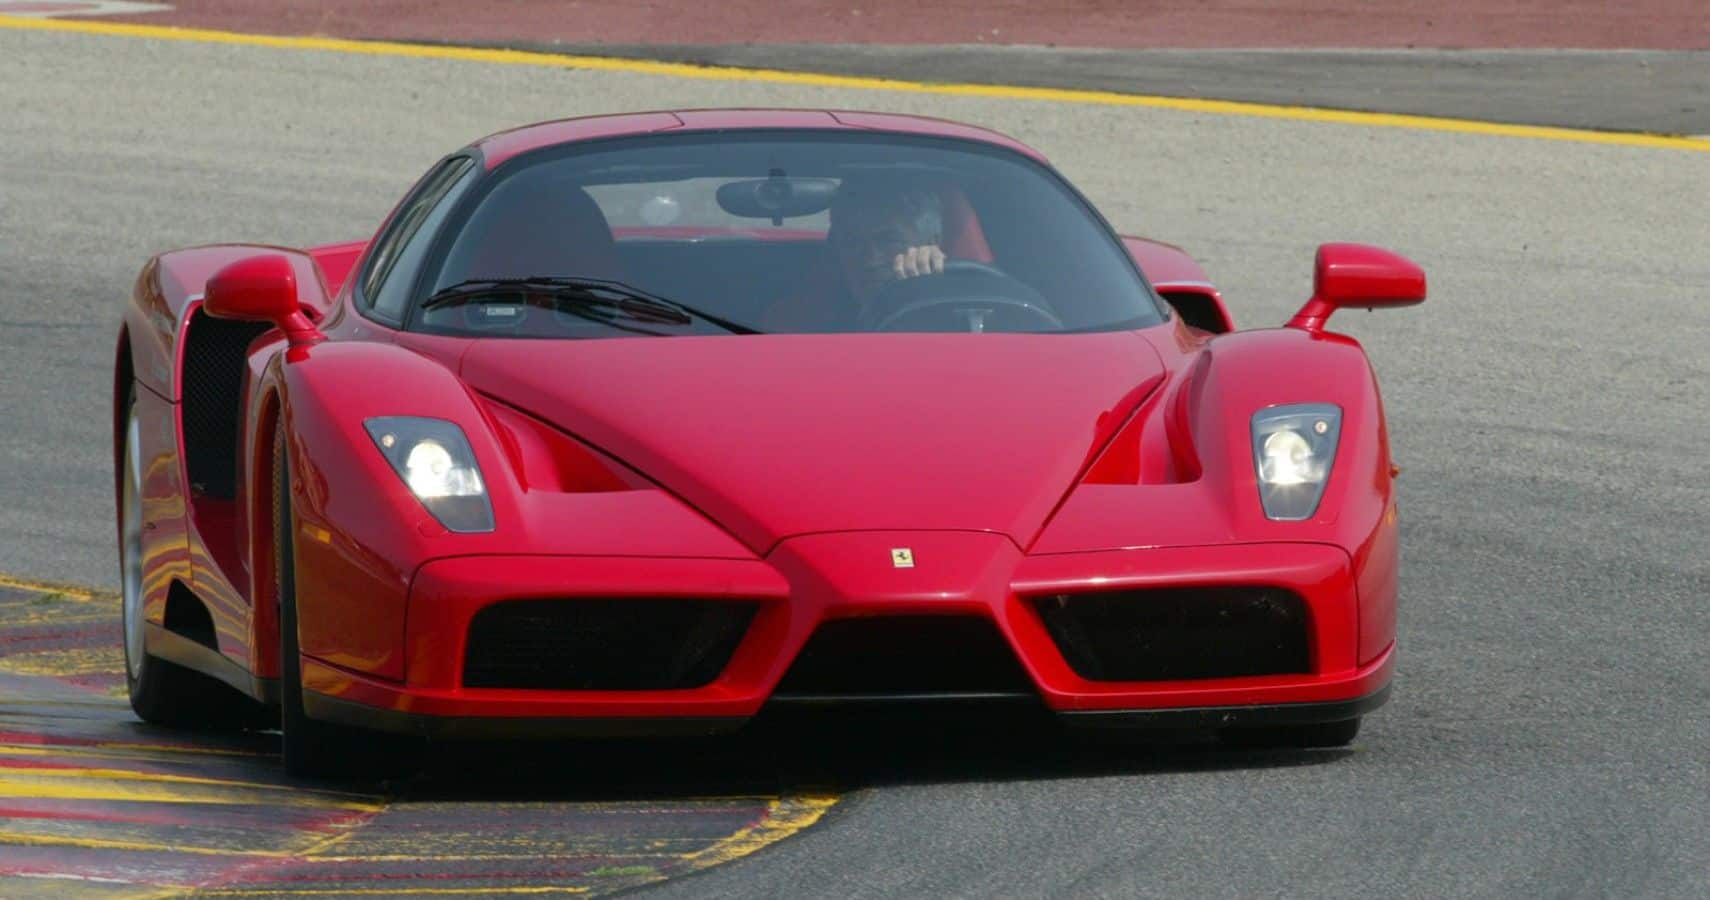 Vista del tercer cuarto delantero del Ferrari Enzo en una curva